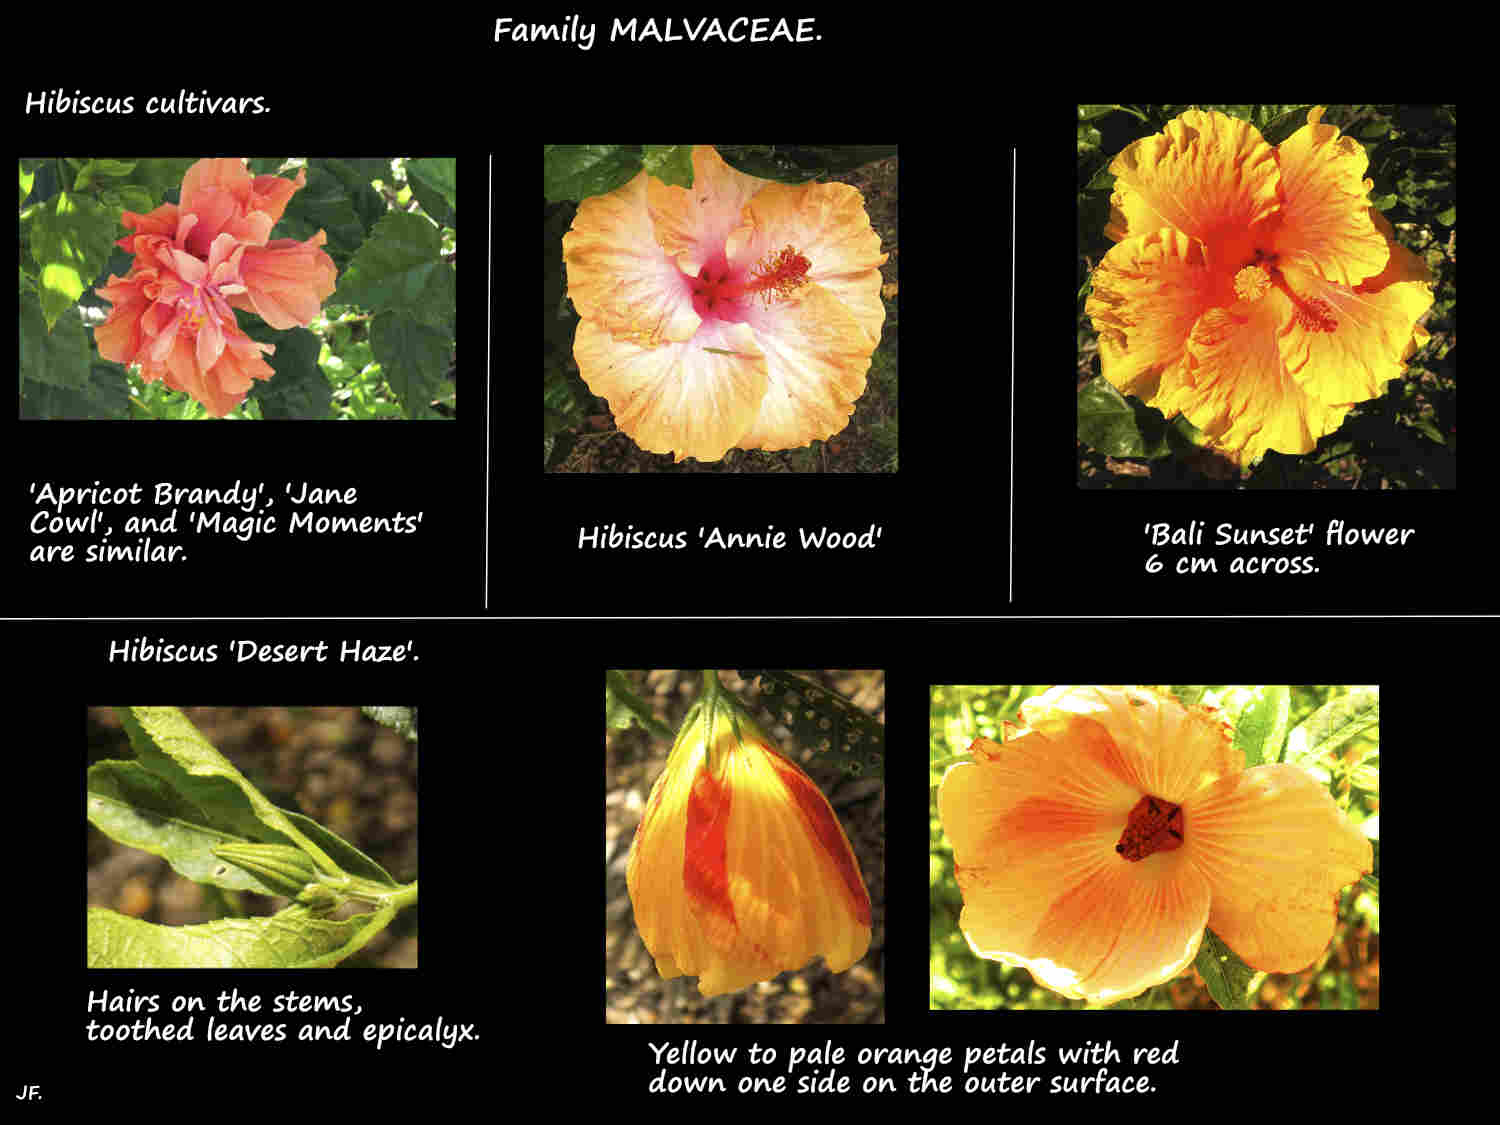 Hibiscus cultivars 1